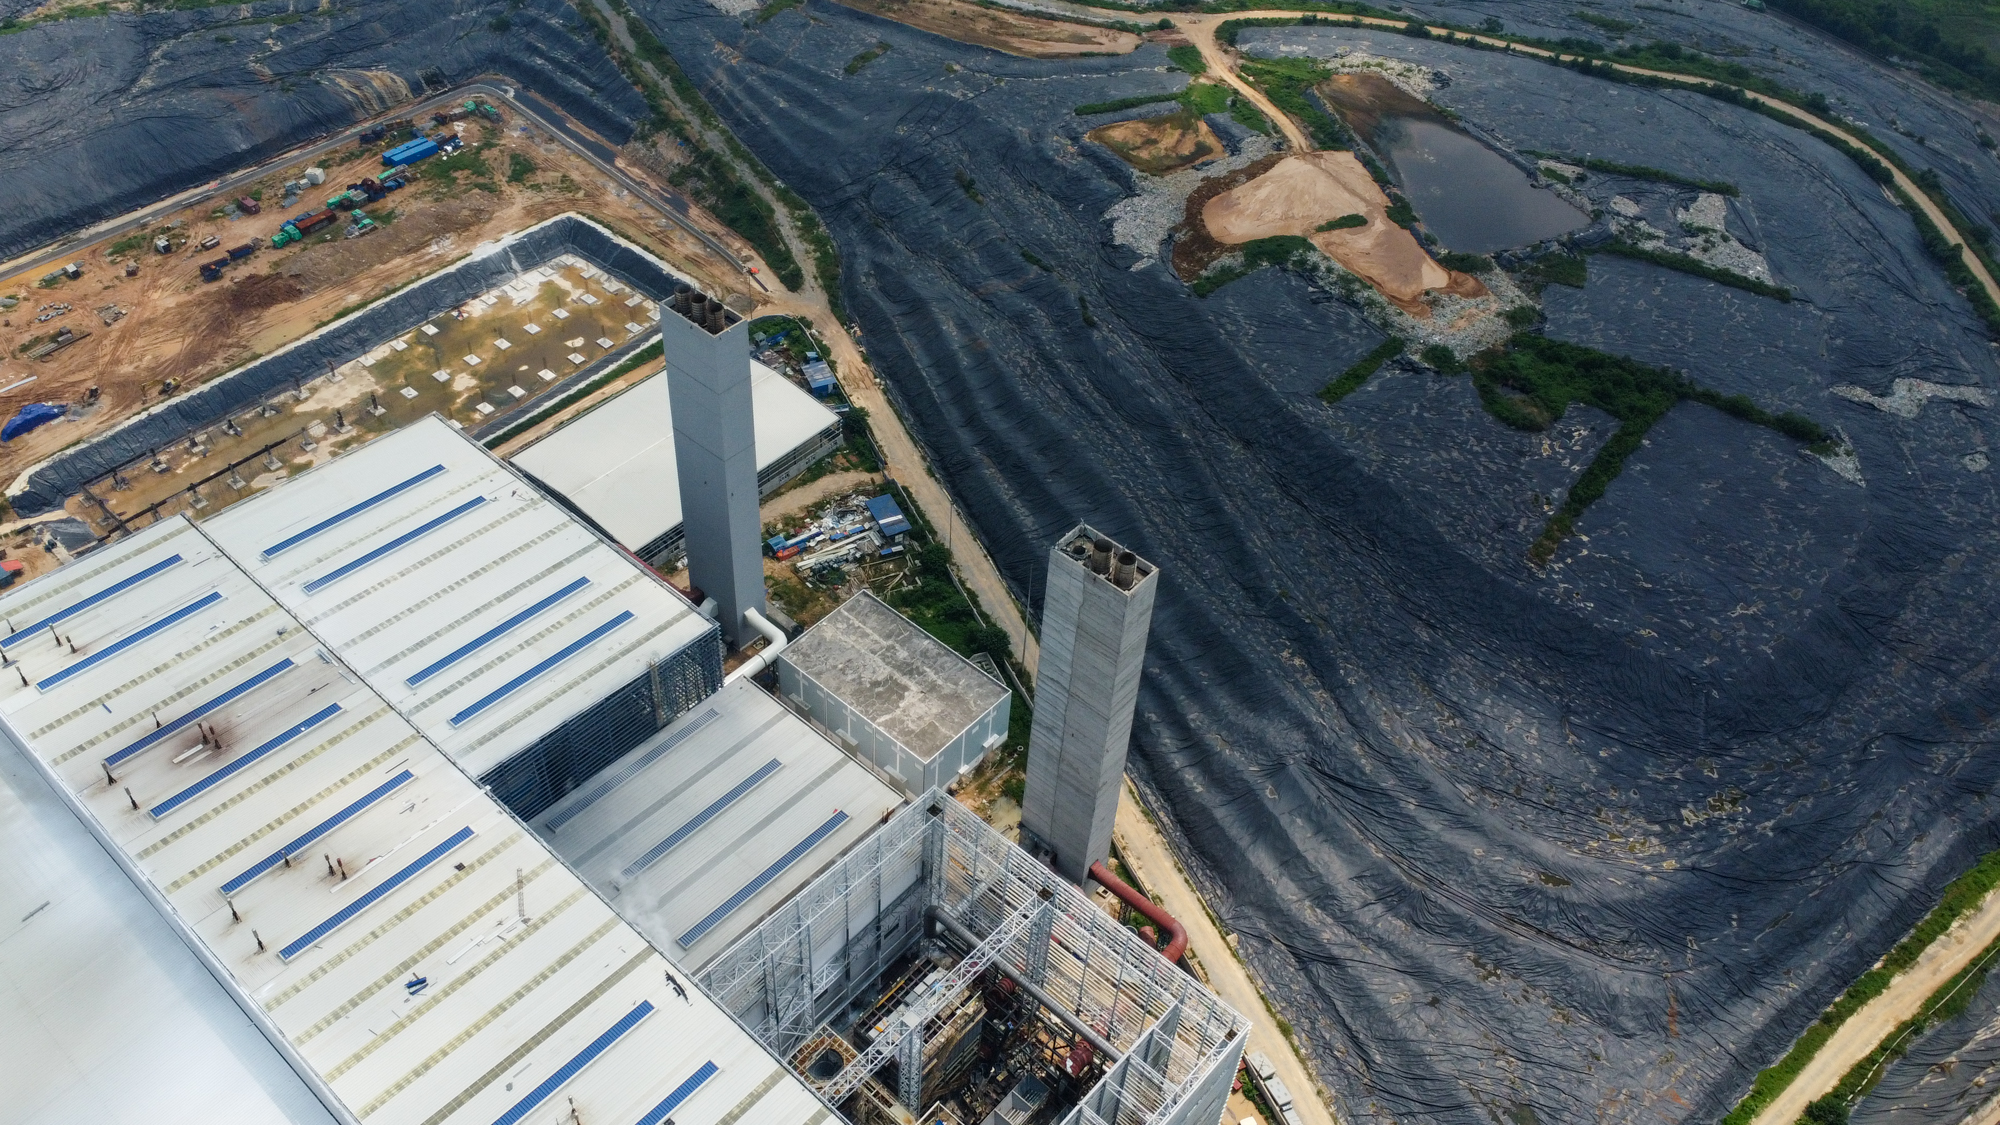  Cảnh vận hành của nhà máy điện rác lớn thứ 2 thế giới ở Hà Nội - Ảnh 2.